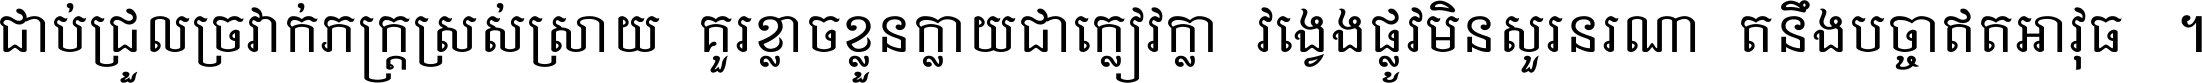 Khmer Busra MOE